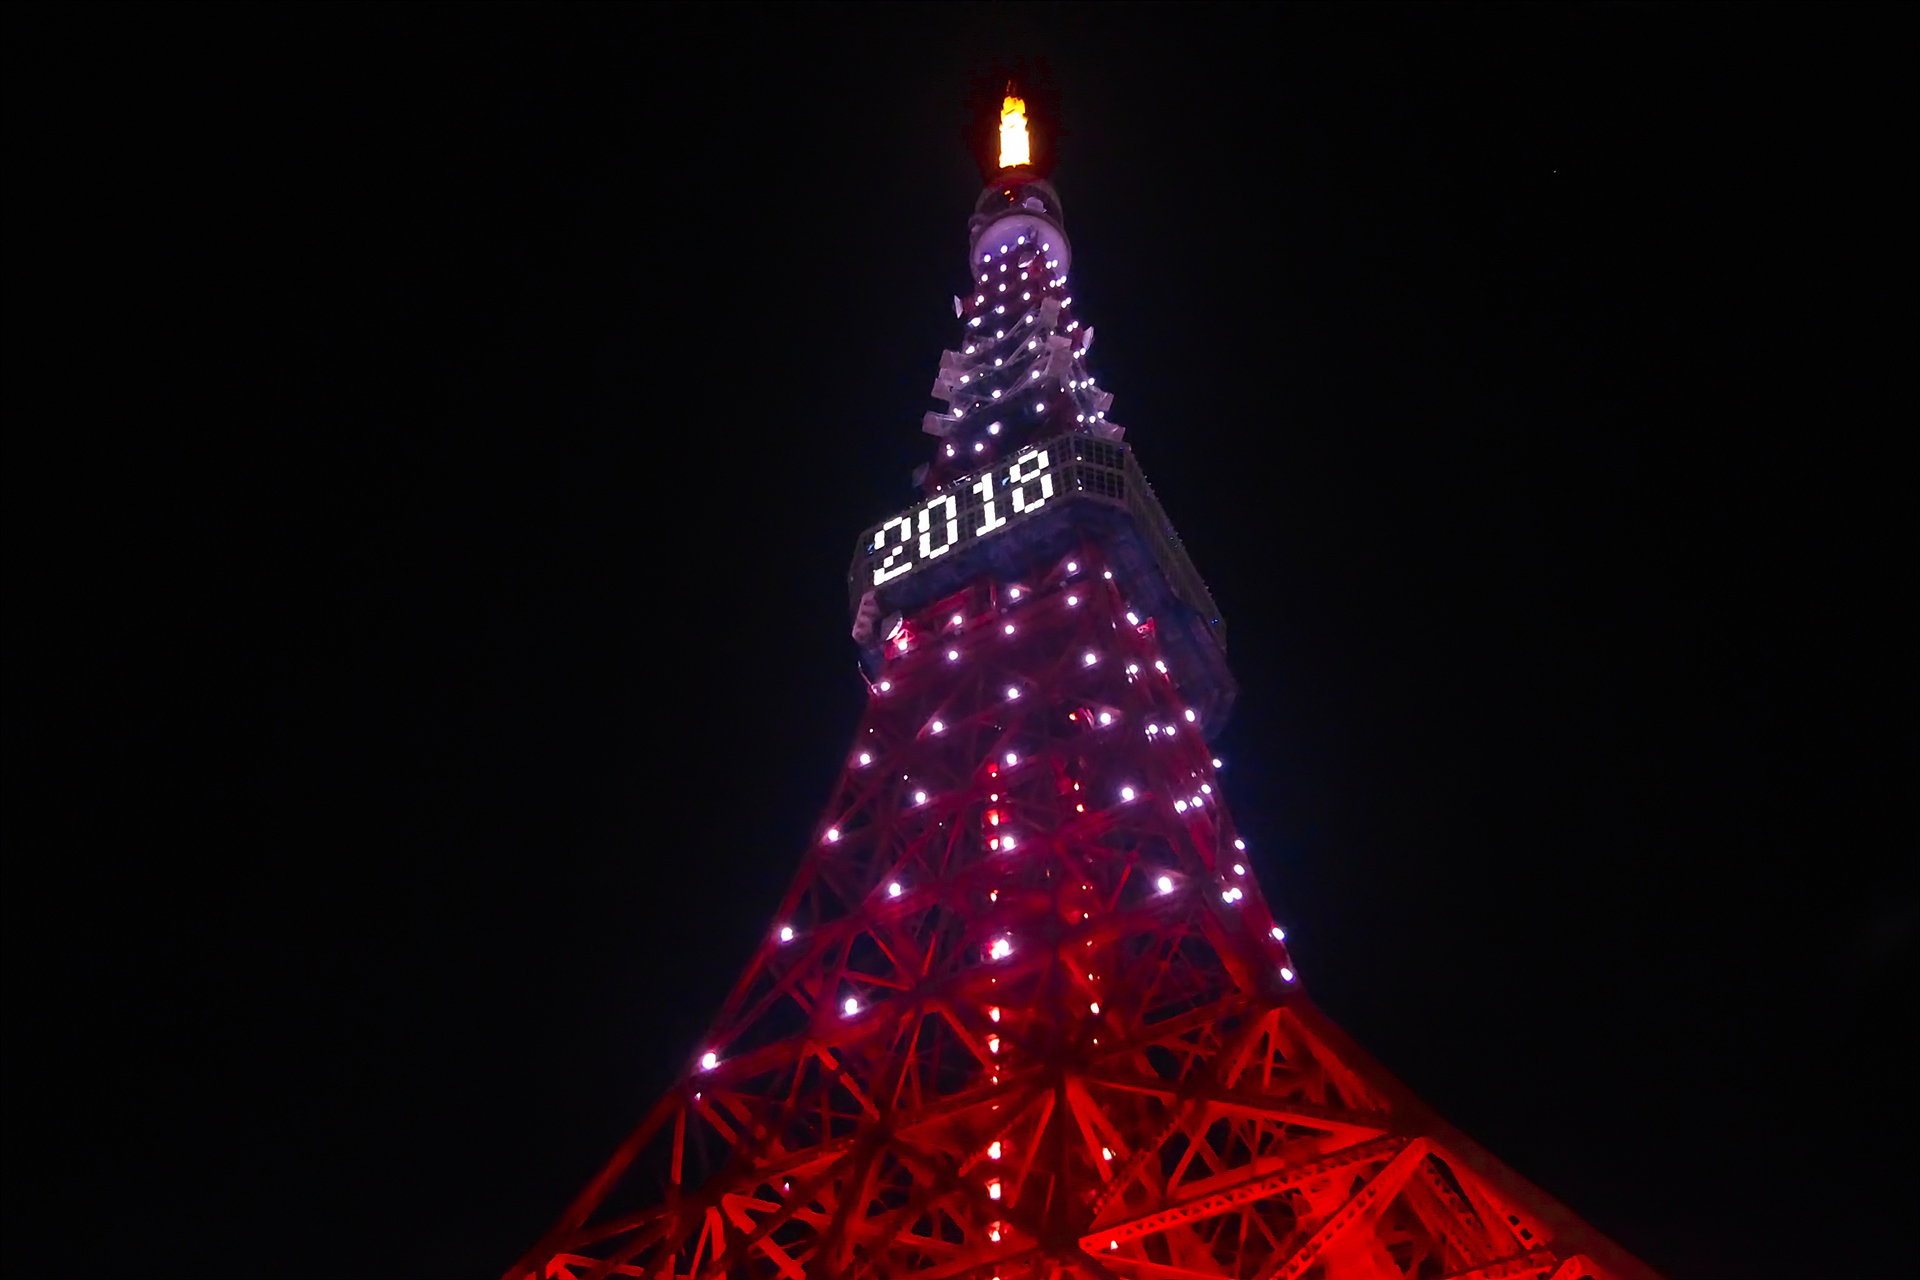 夜景 花火 イルミ 18新春の東京タワー 壁紙19x1280 壁紙館